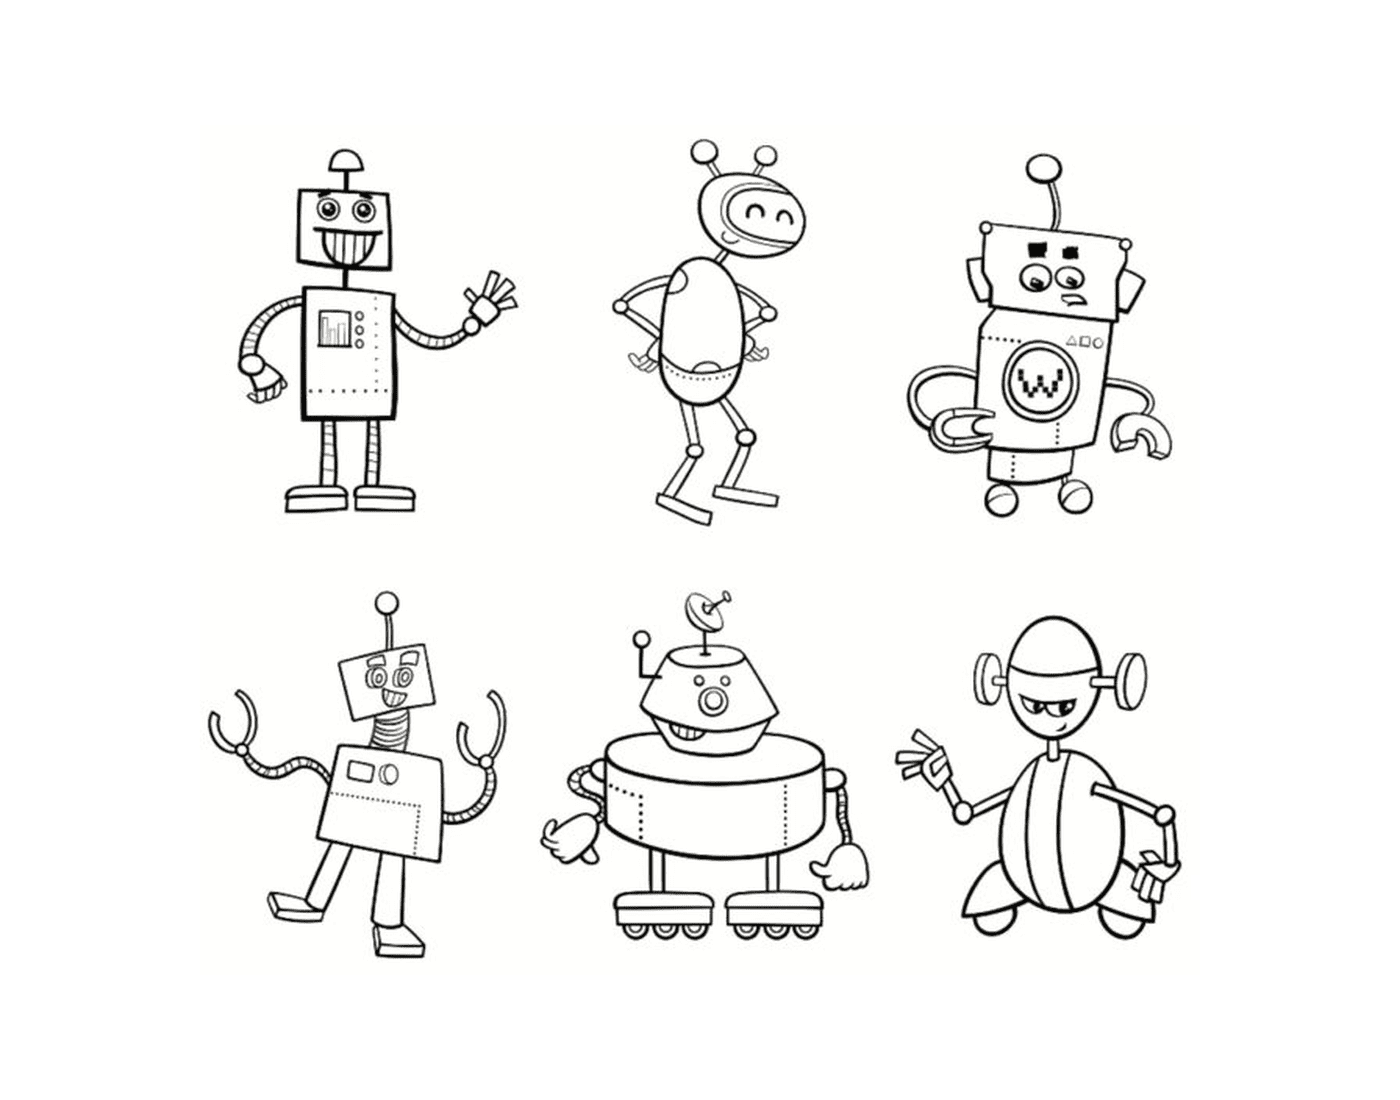  Familia de robots 